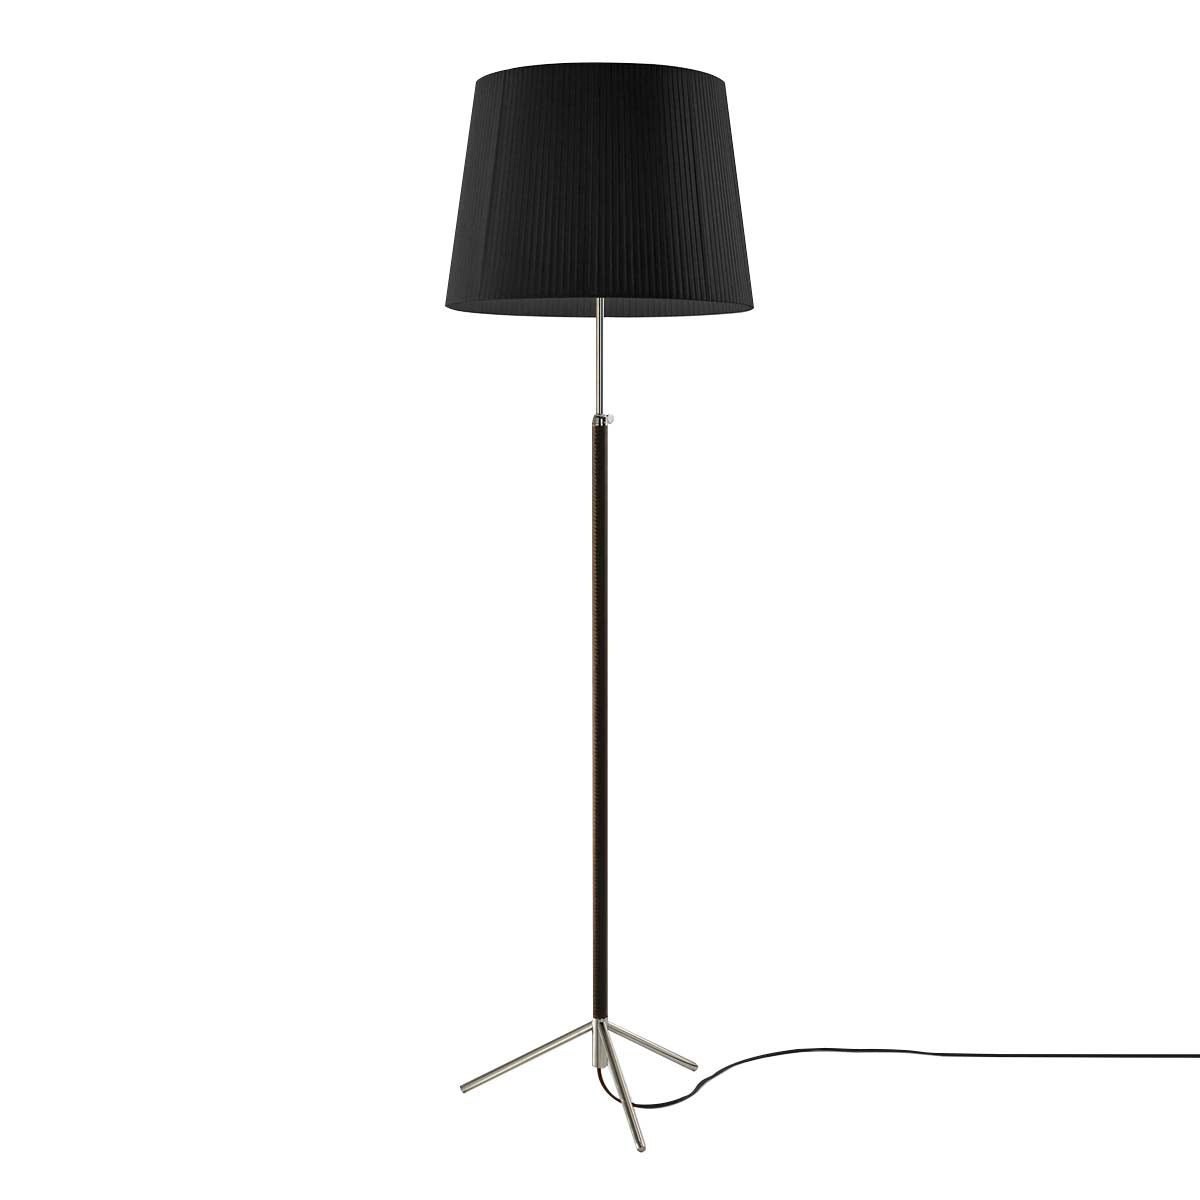 Pie de Salón Floor Lamp: G1 + Chrome-Plated + Black